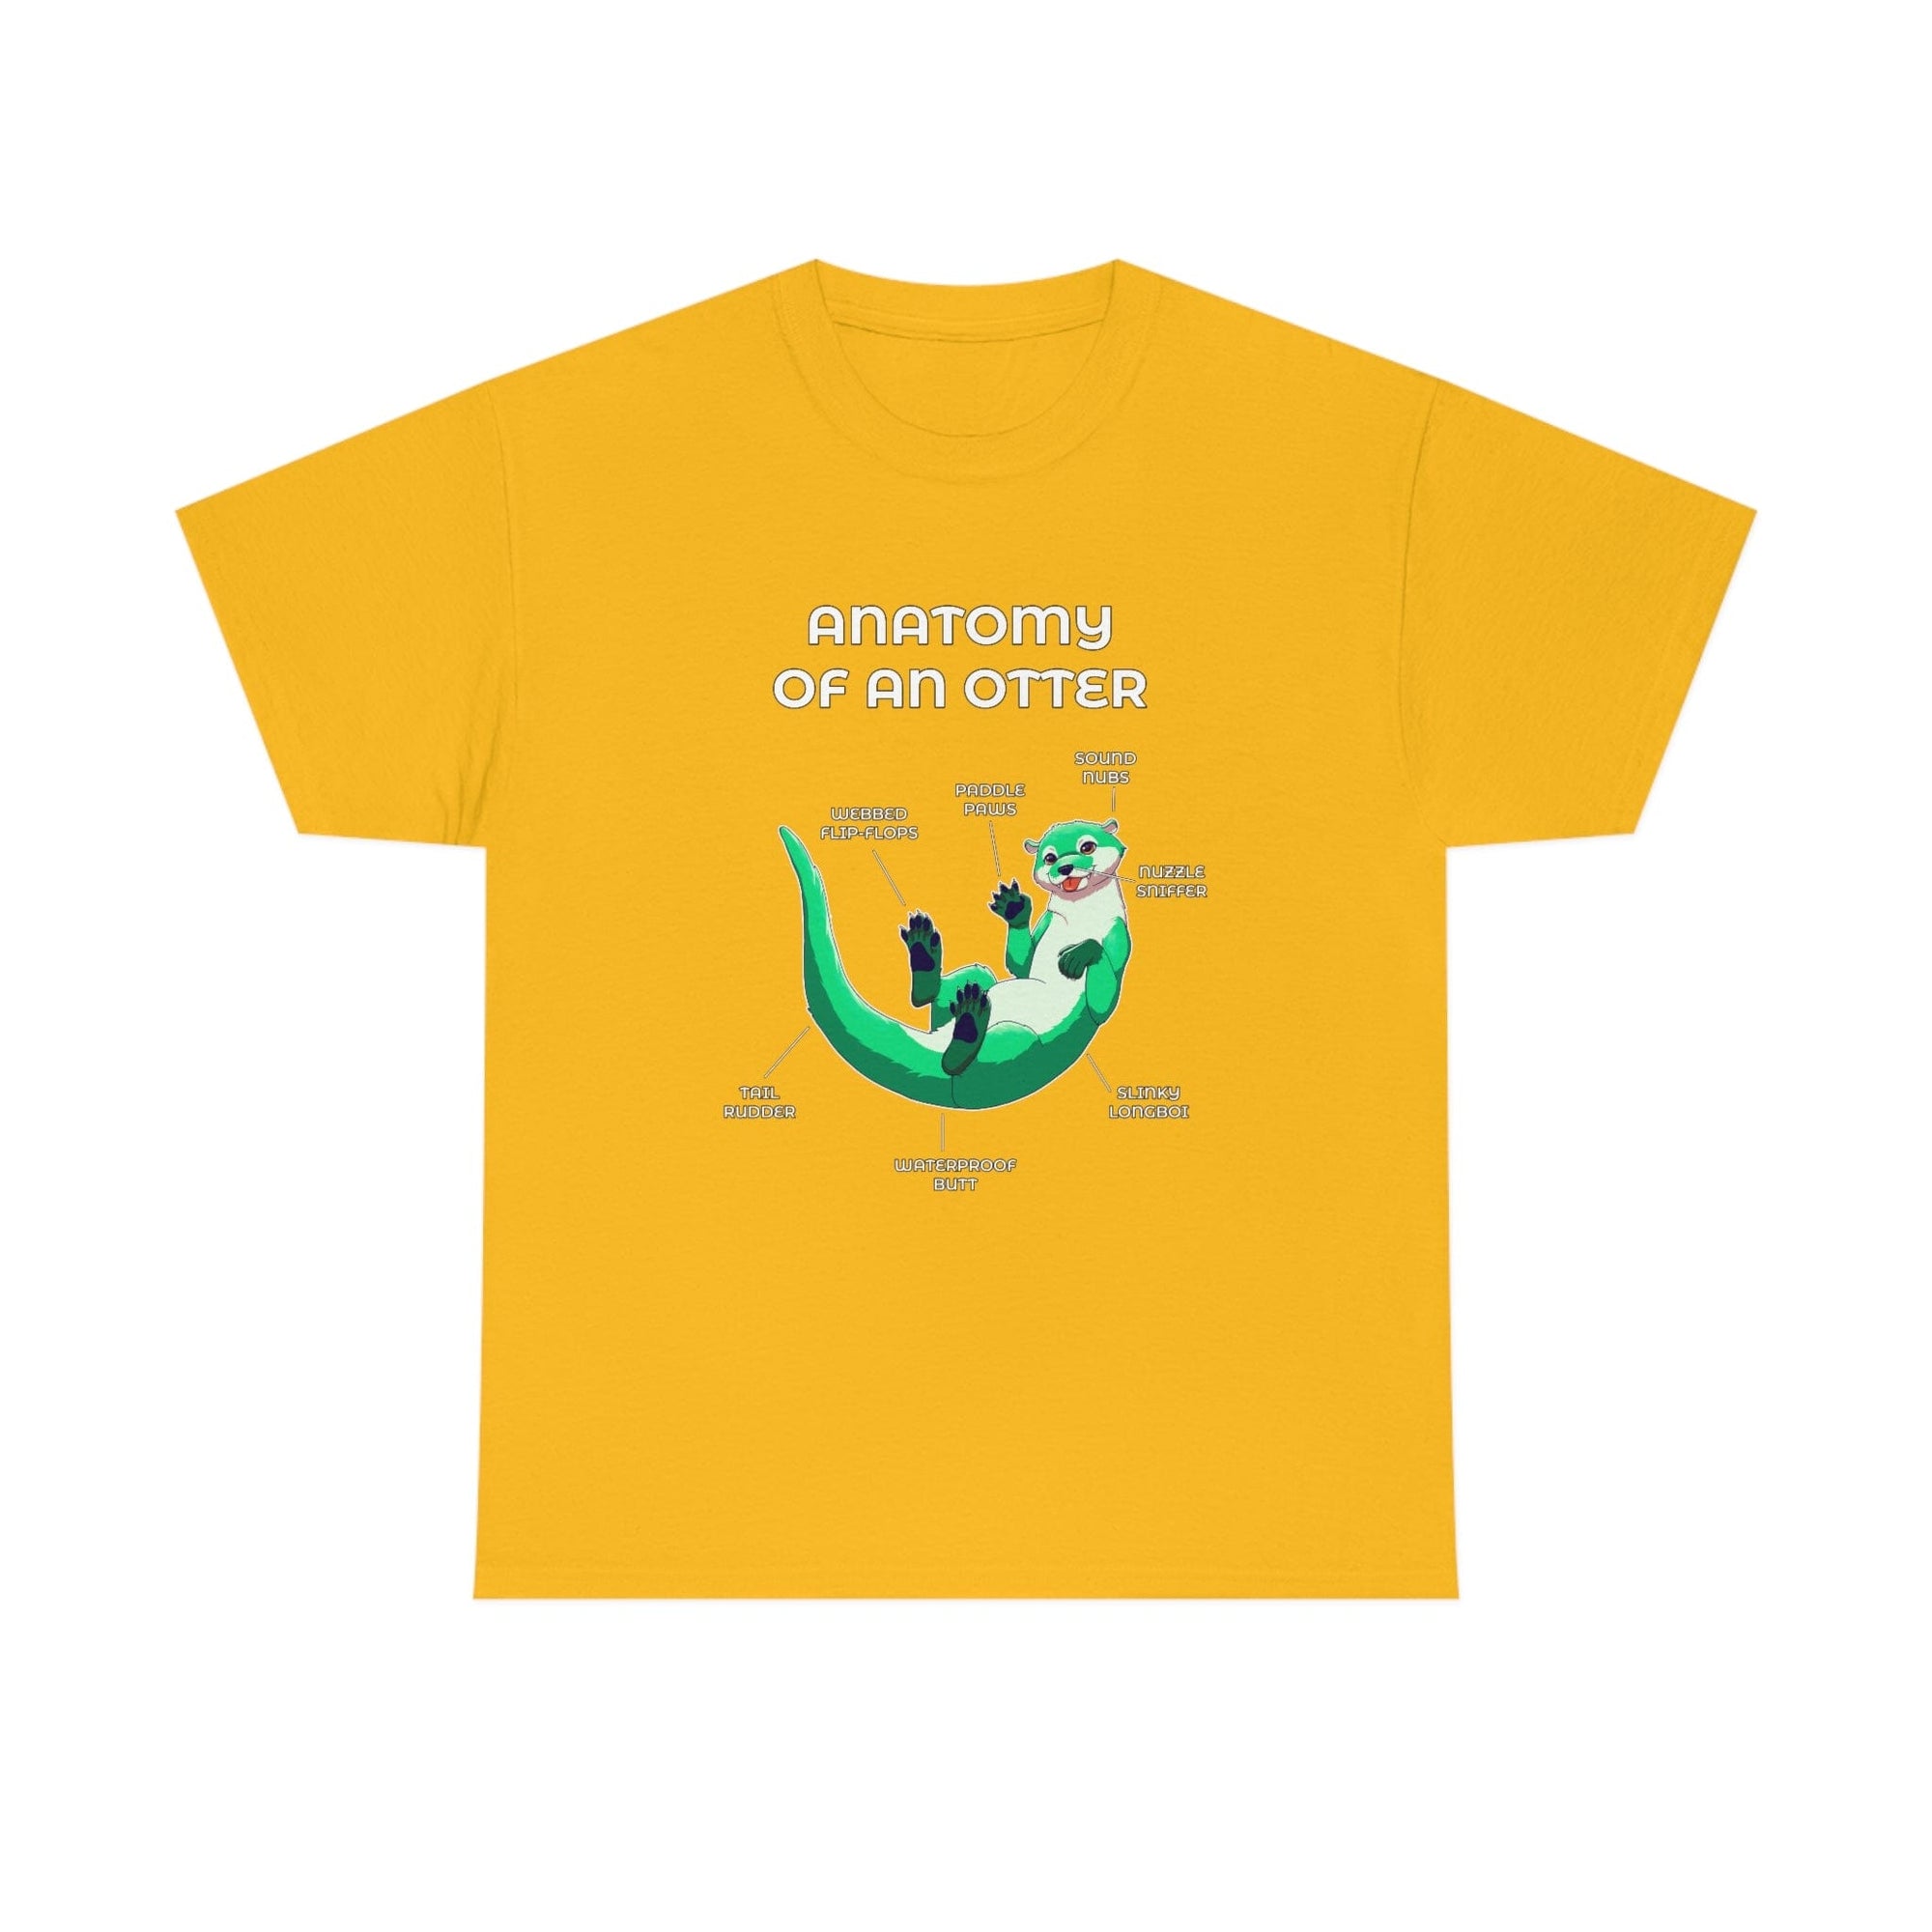 Otter Green - T-Shirt T-Shirt Artworktee Gold S 